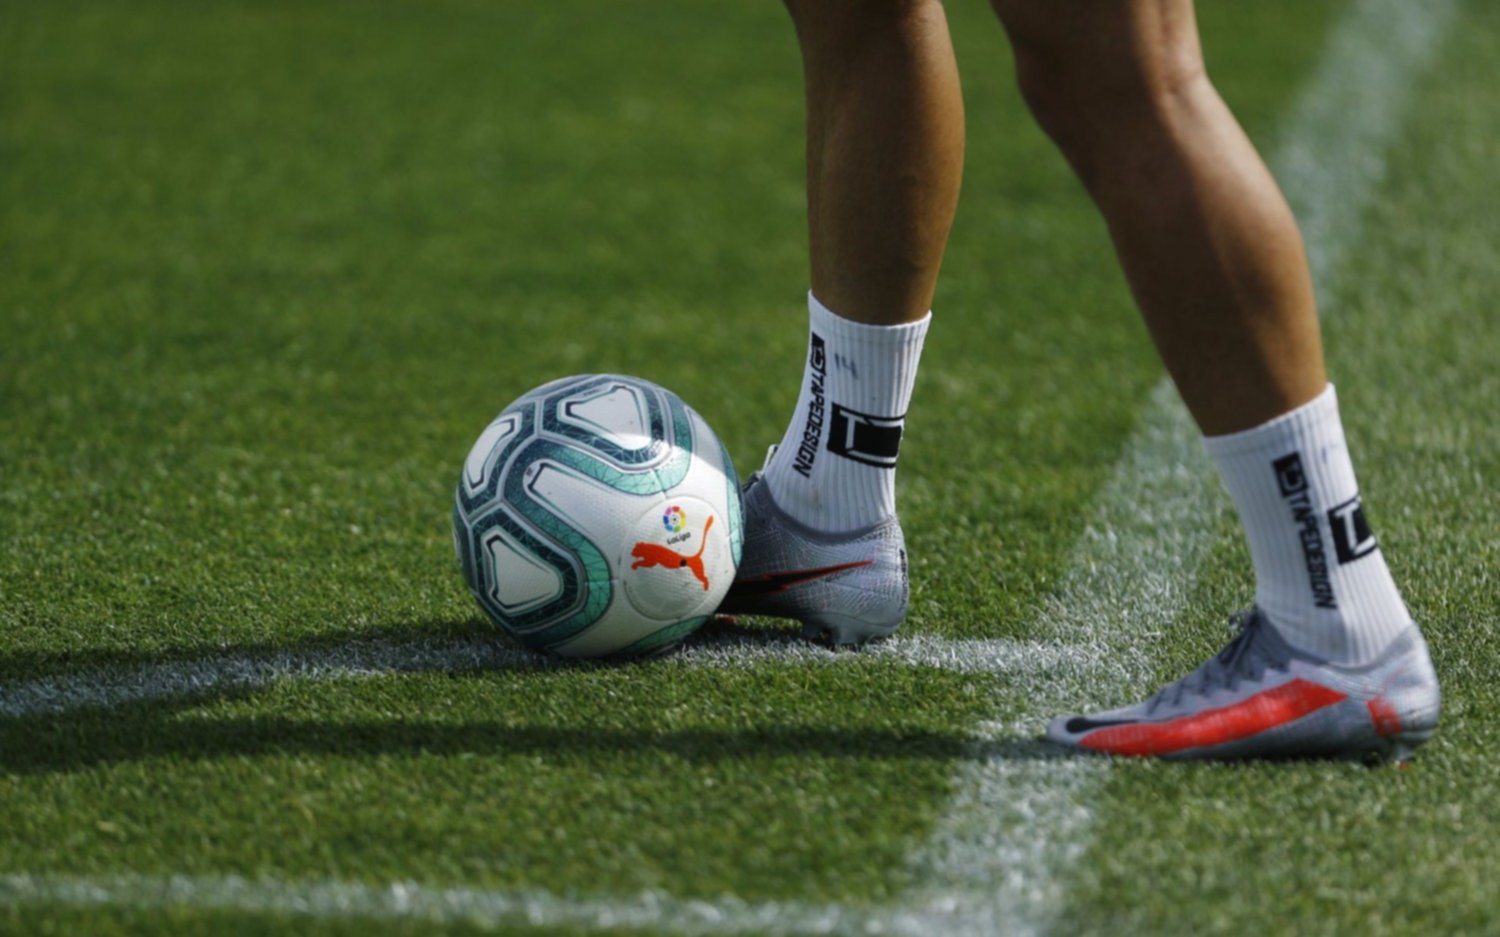 Se vienen cambios en el fútbol: qué modificaciones reglamentarias se discutirán